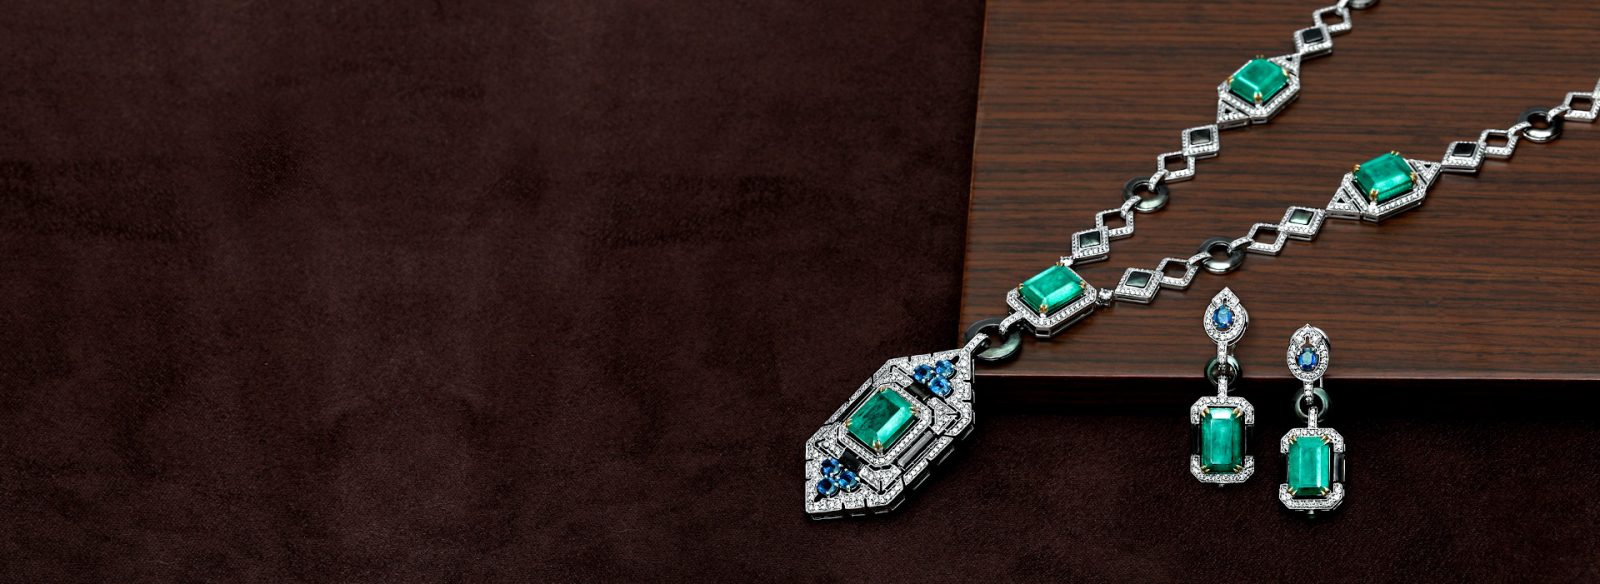 Opera - Necklace & Earrings